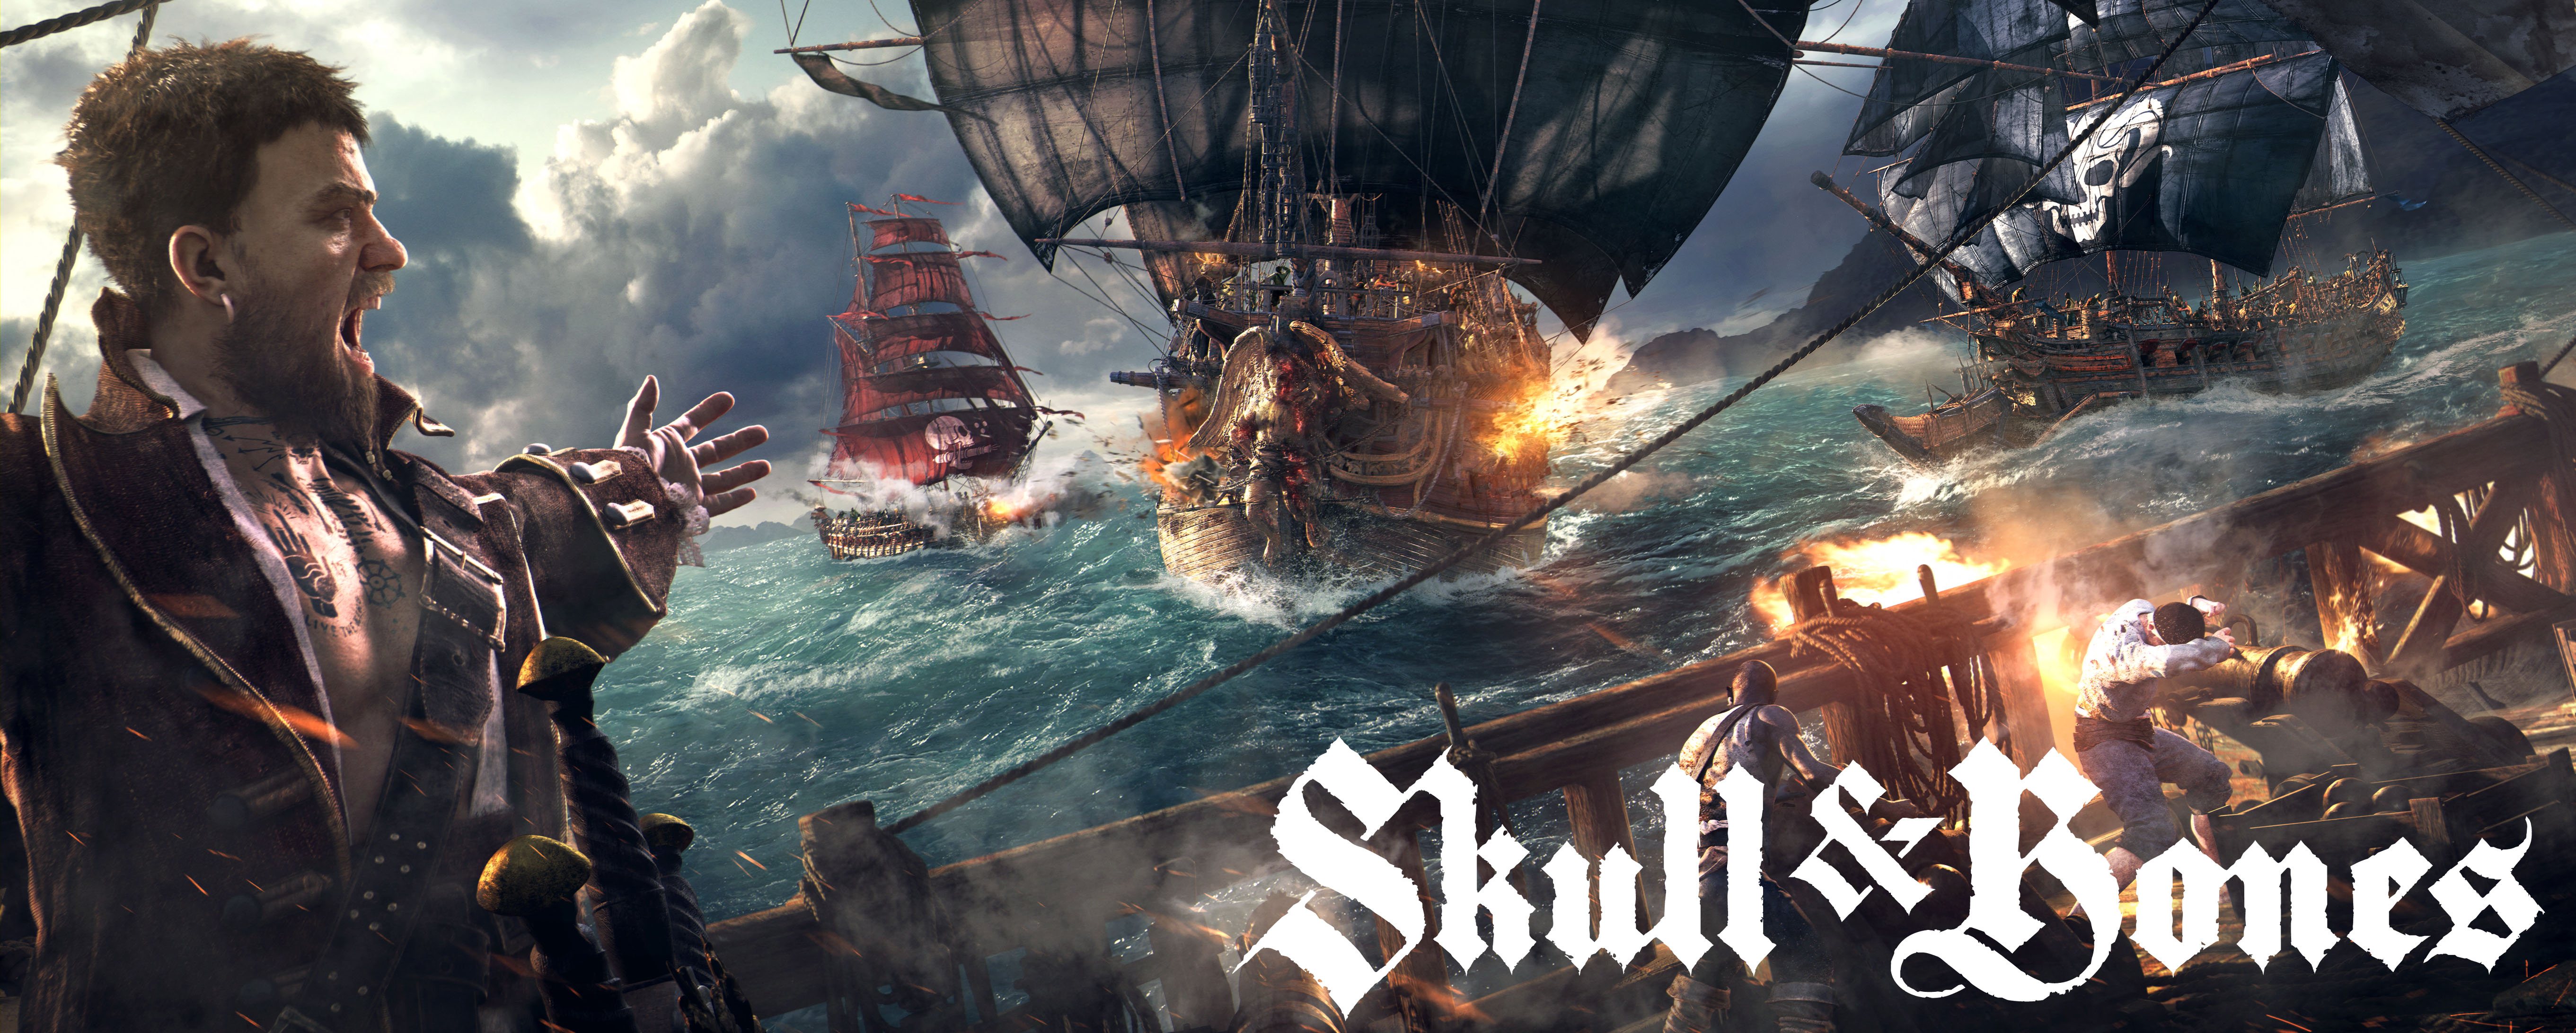 Skull And Bones Game - HD Wallpaper 